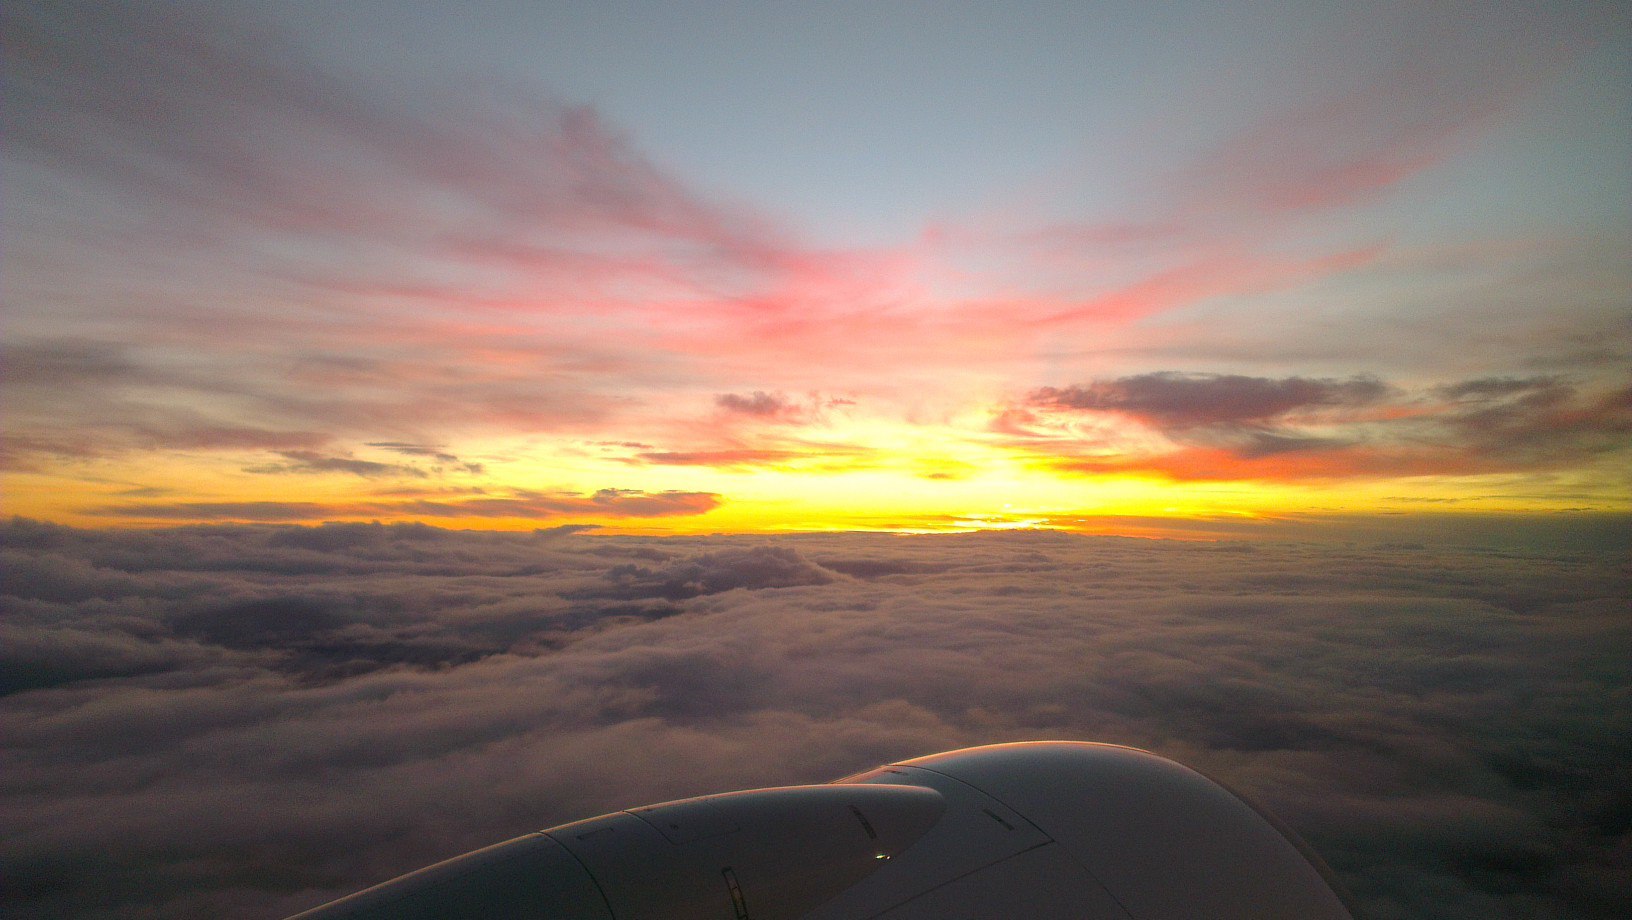 Sunset taken in-flight departing Hobart, Tasmania